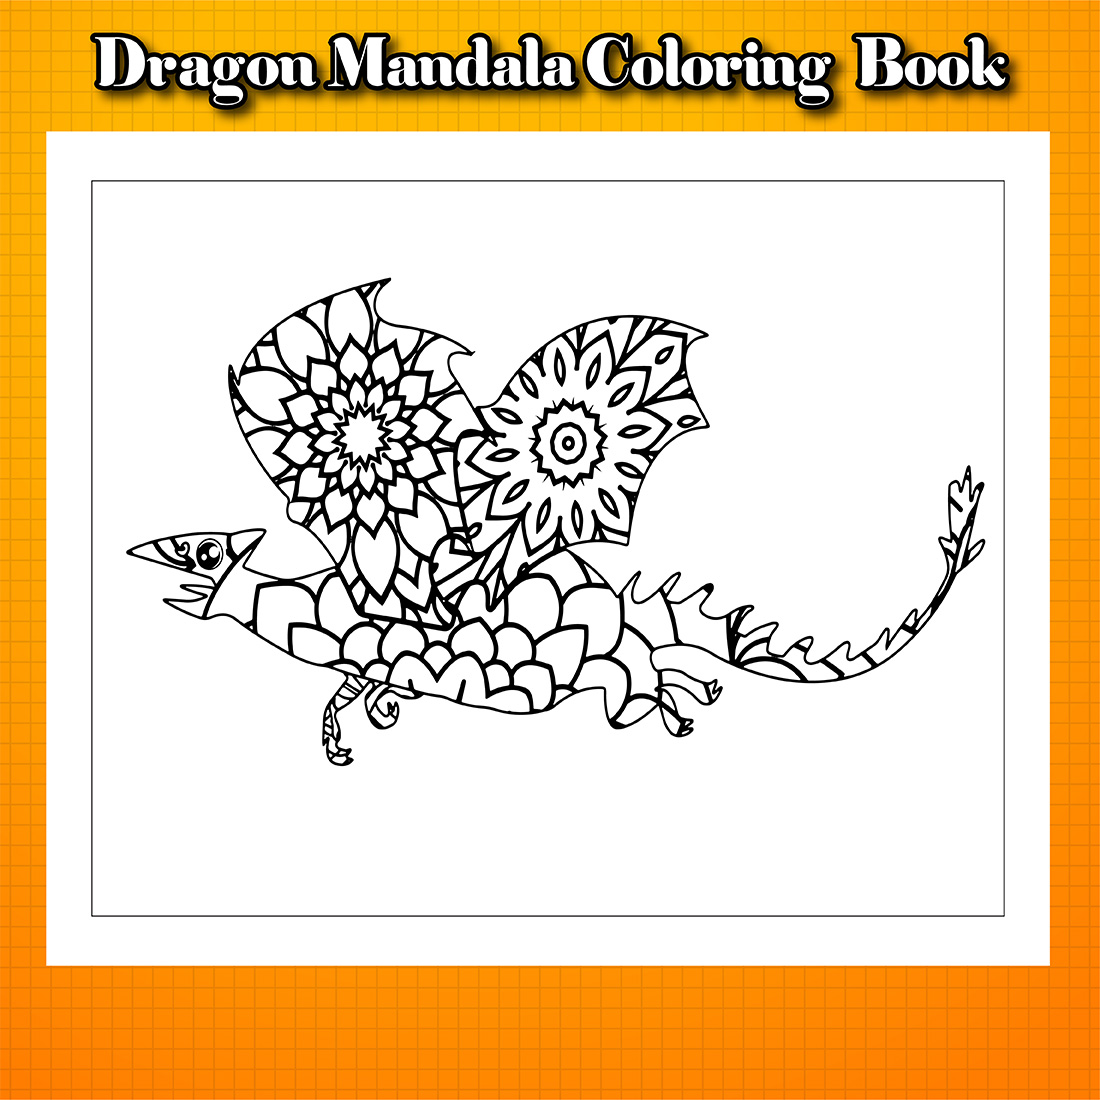 Dragon Mandala Coloring Book cover image.